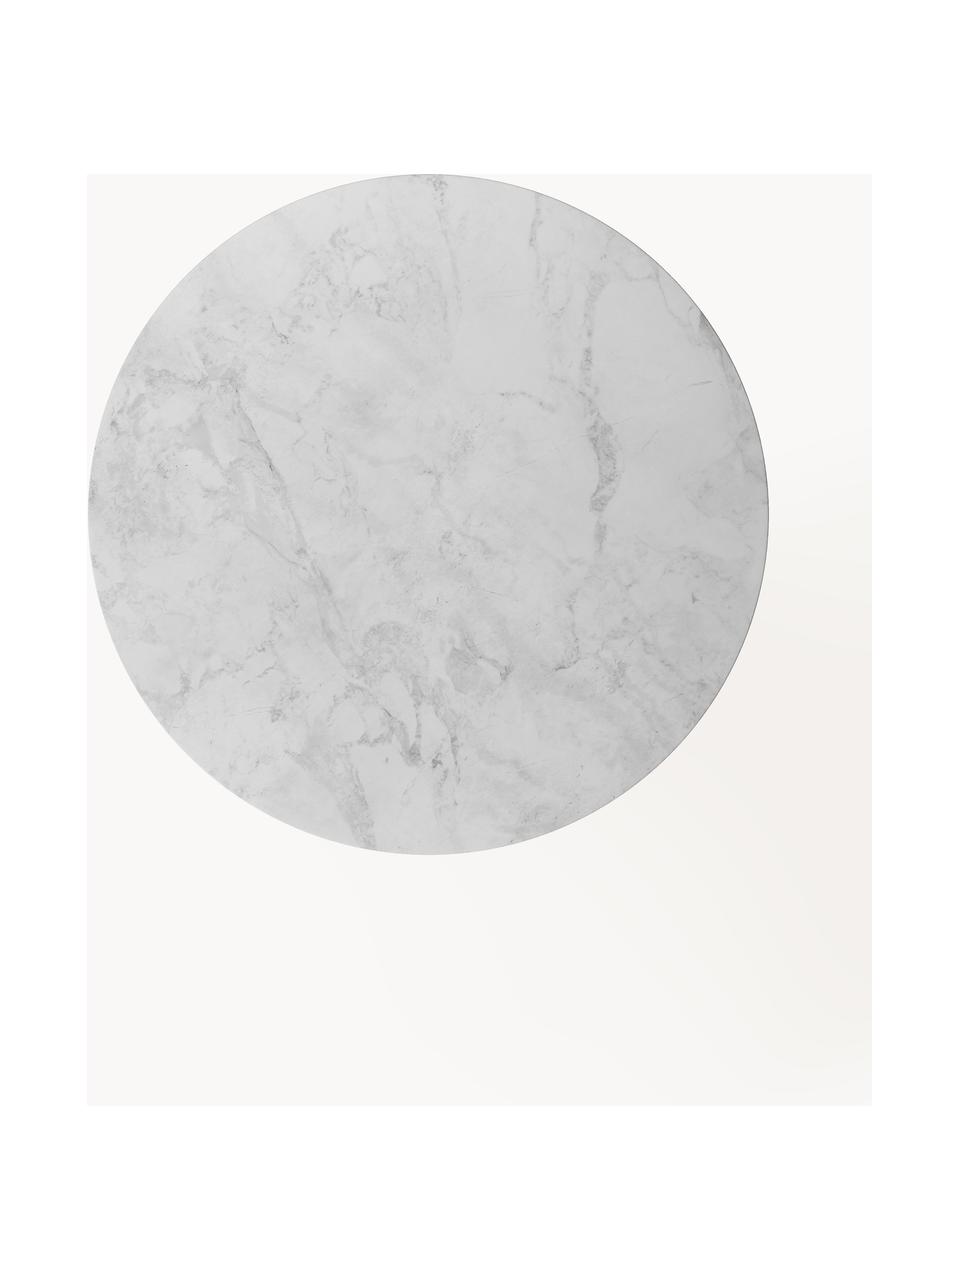 Runder Esstisch Mavi, Ø 110 cm, Tischplatte: Keramik, Beine: Metall, pulverbeschichtet, Weiß, Hellgrau, Ø 110 cm